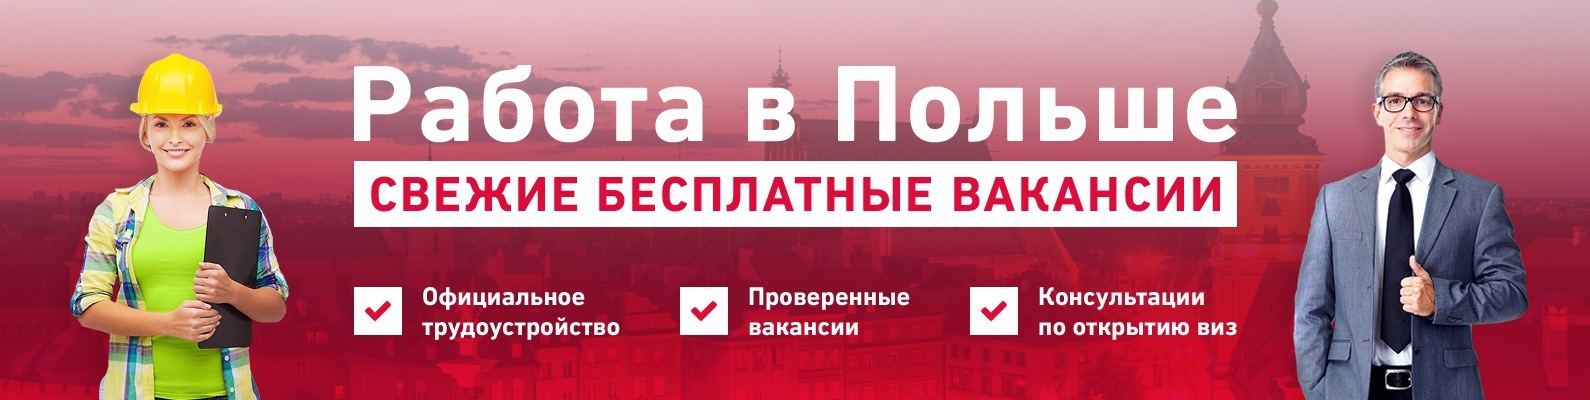 Работа в польше для белорусов: требования, поиск и как официально трудоустроиться